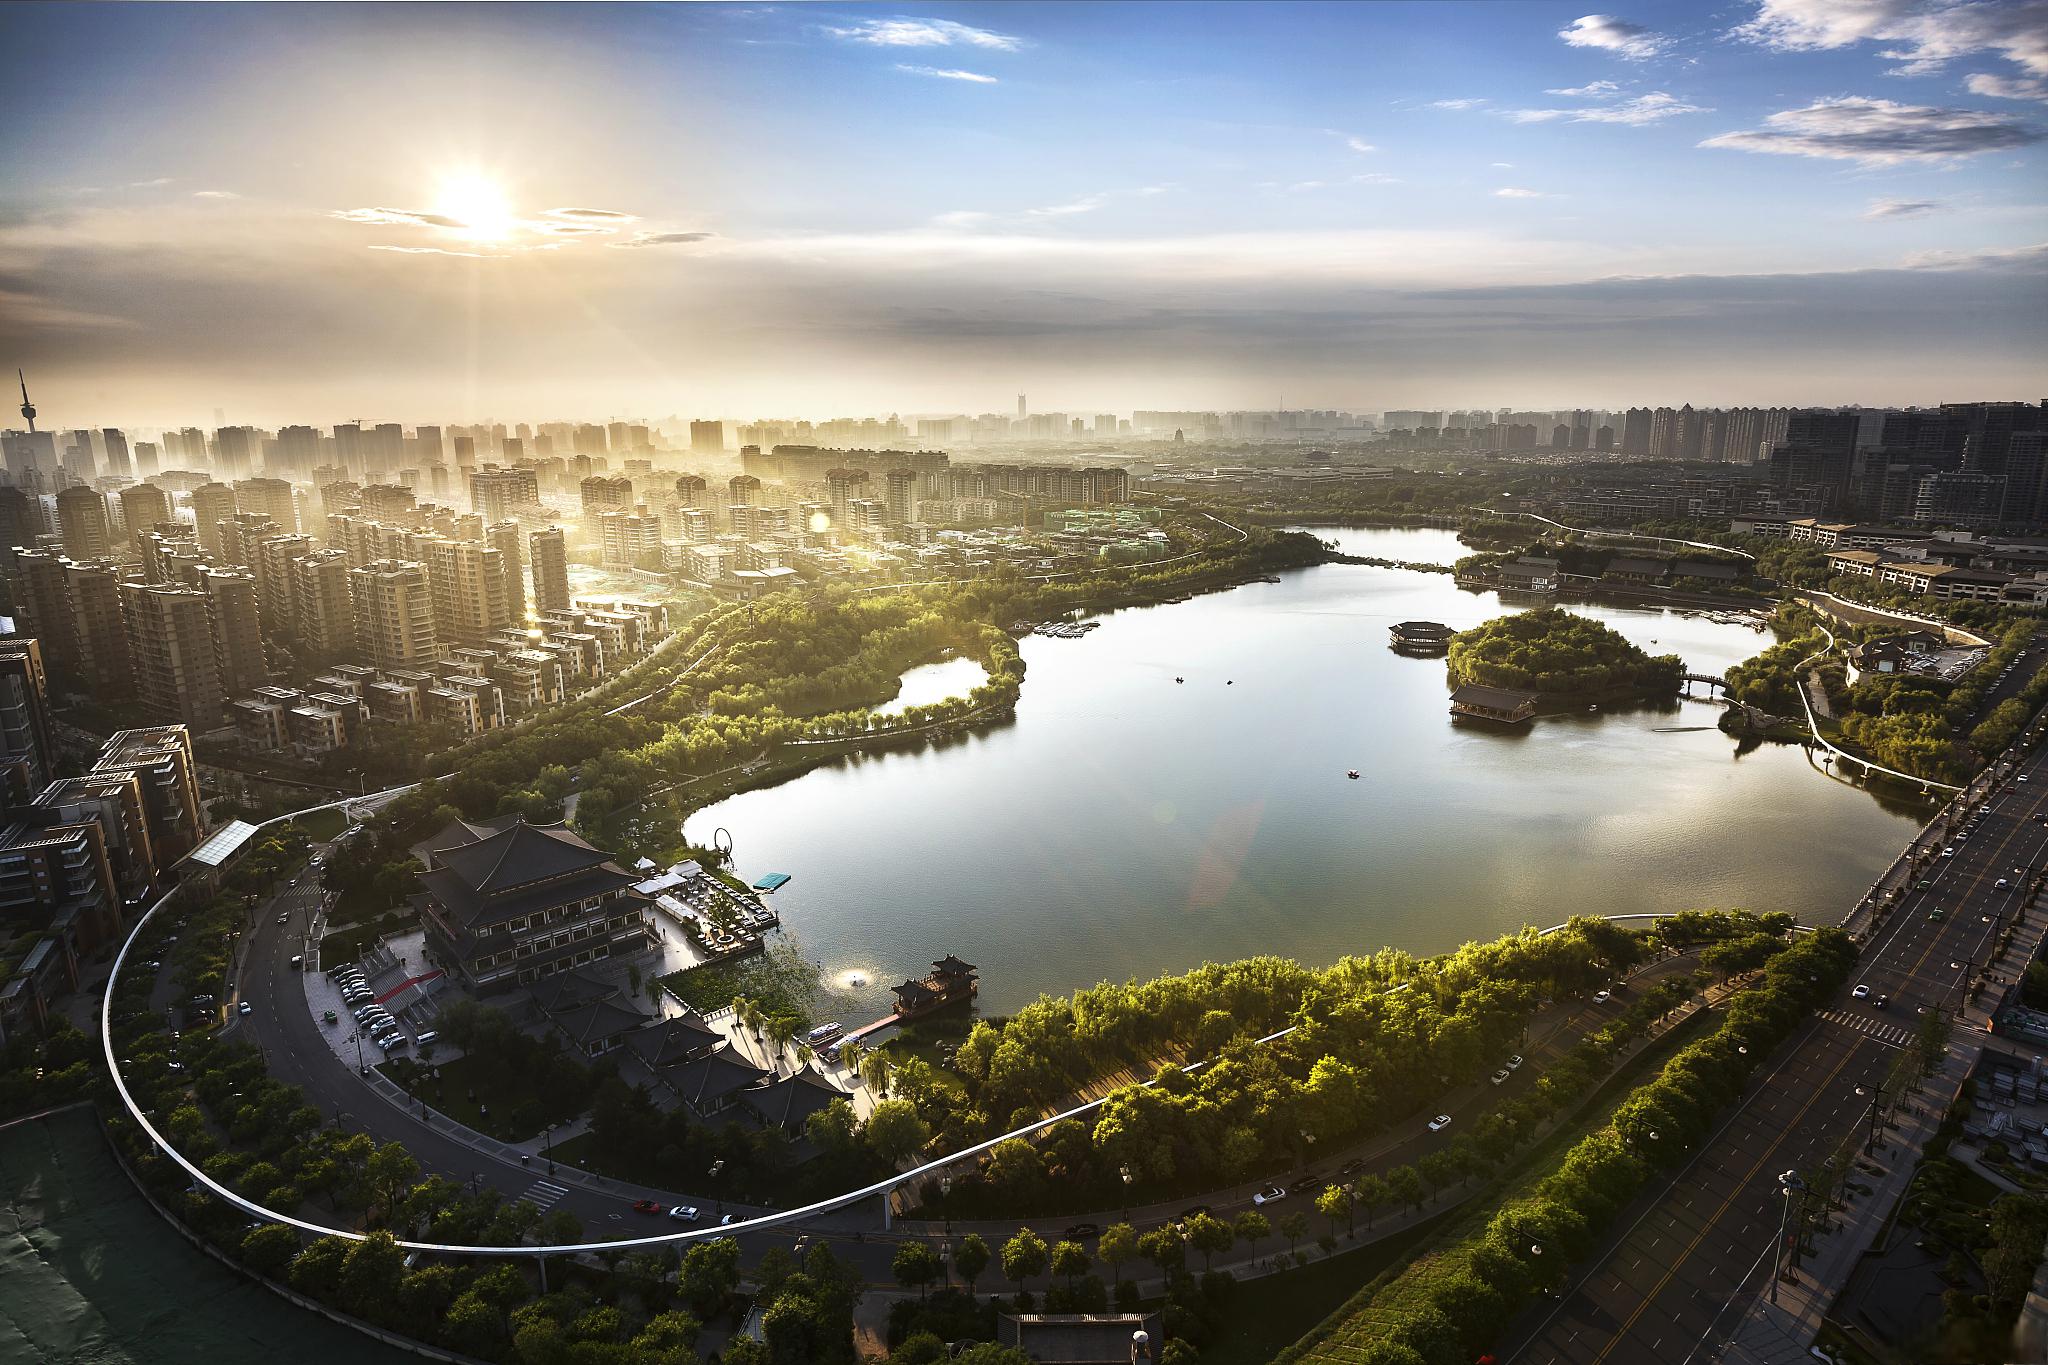 荥阳旅游景点推荐 荥阳是河南省郑州市的一个美丽地区,拥有许多引人入